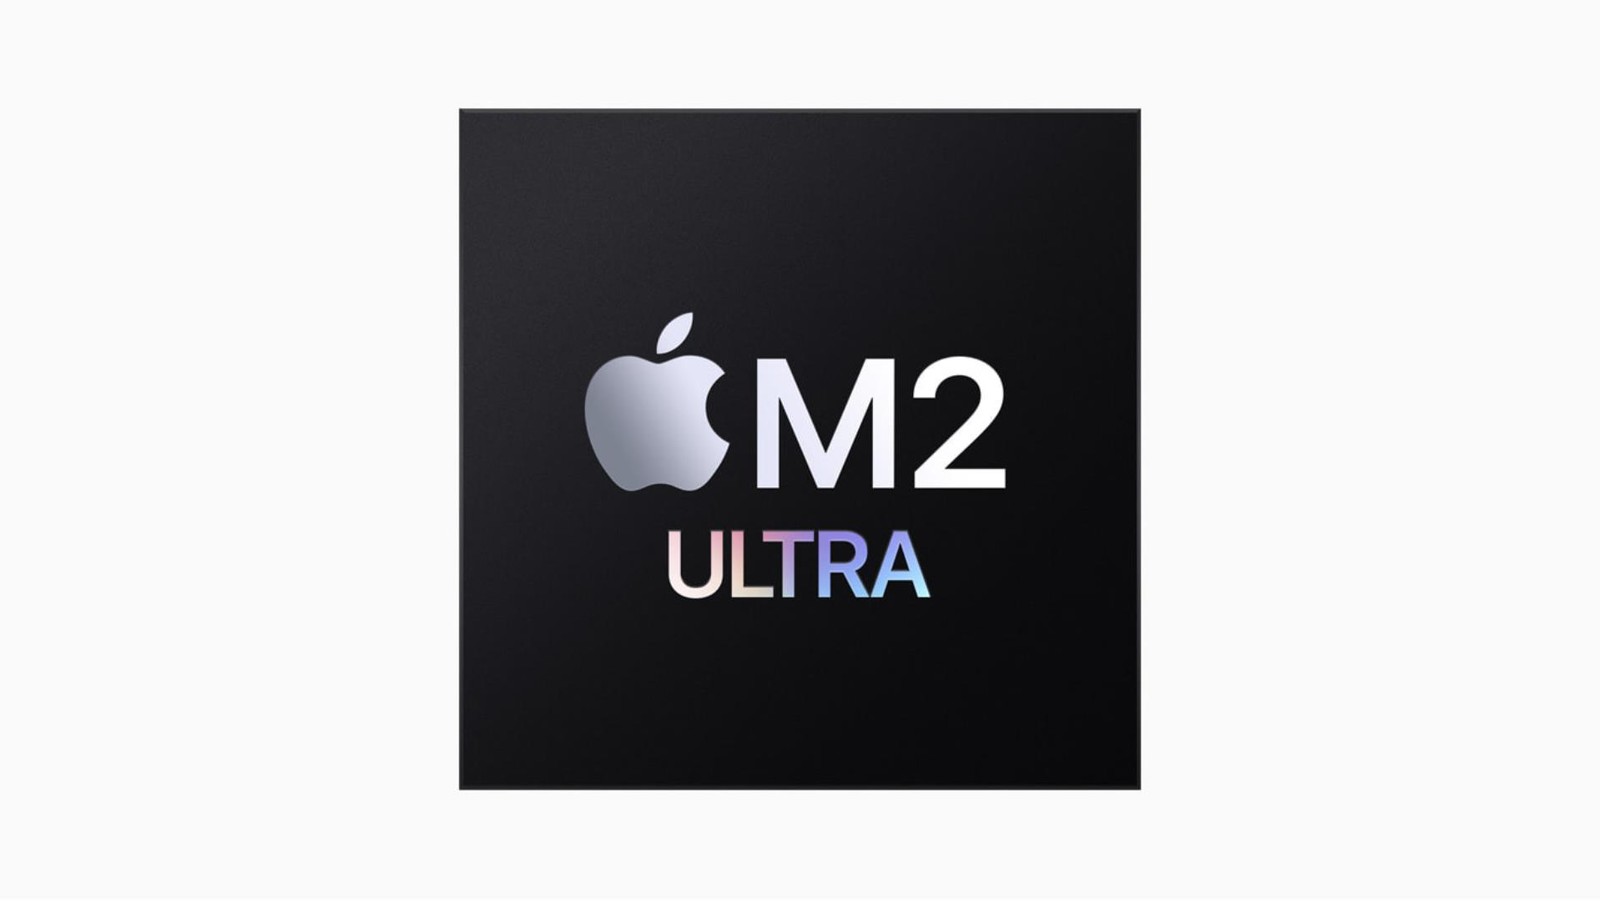 Oto serce najpotężniejszych komputerów Mac. Apple M2 Ultra ustanowił nowy poziom wydajności